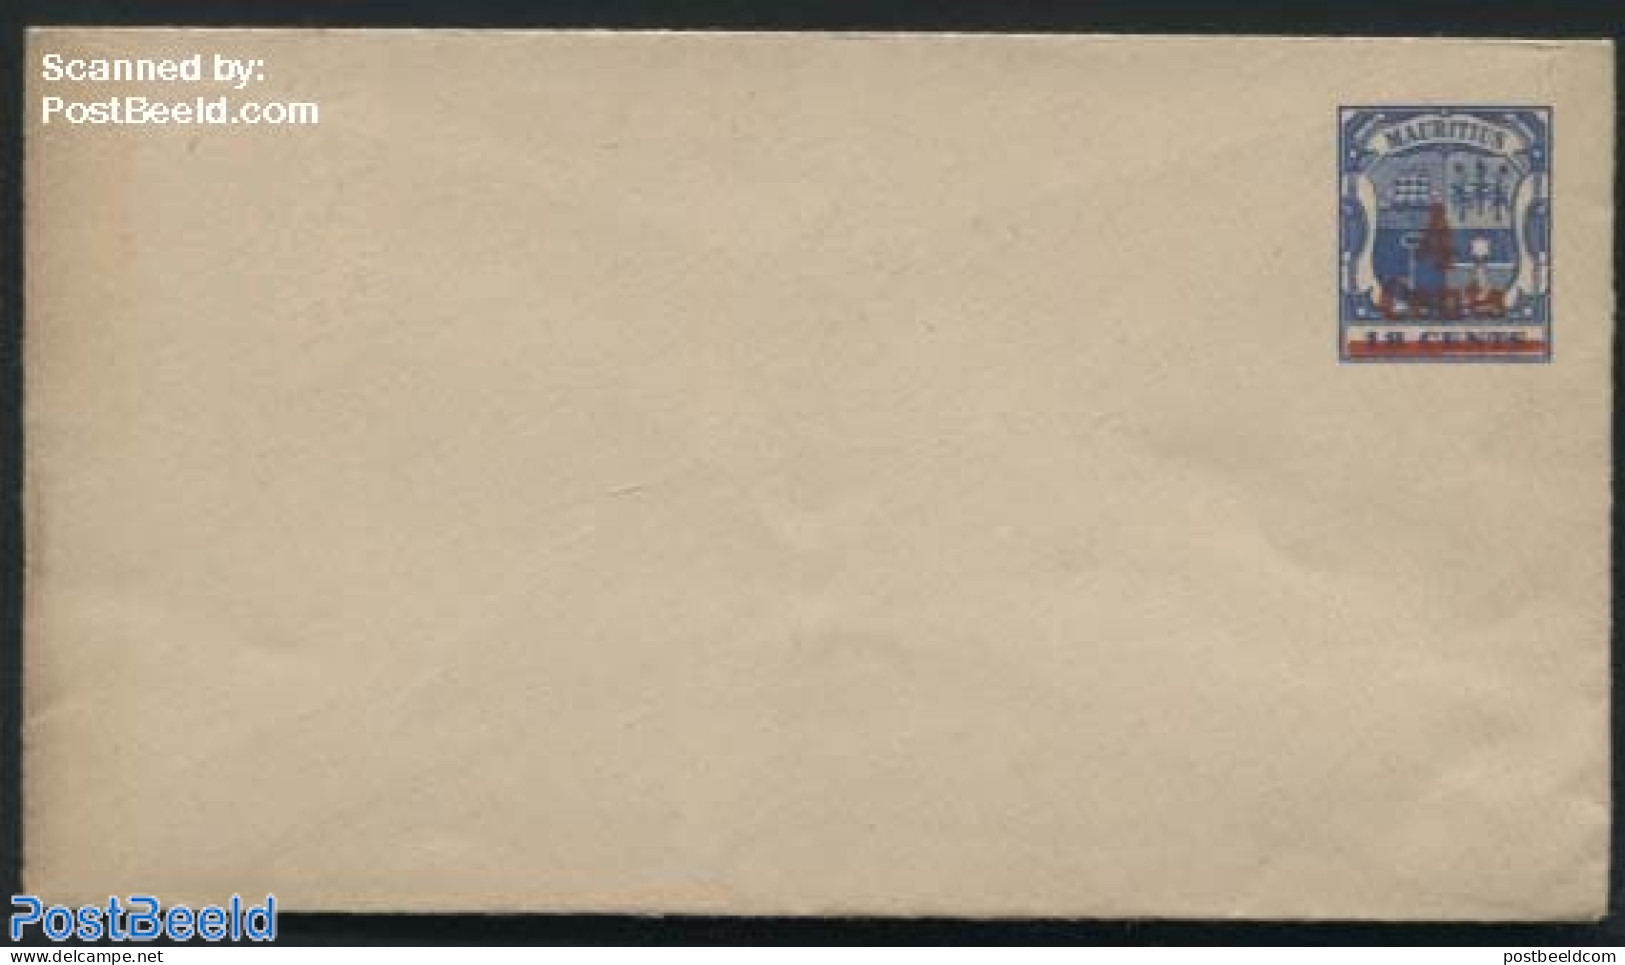 Mauritius 1898 Envelope 4c On 18c (140x79mm), Unused Postal Stationary - Maurice (1968-...)